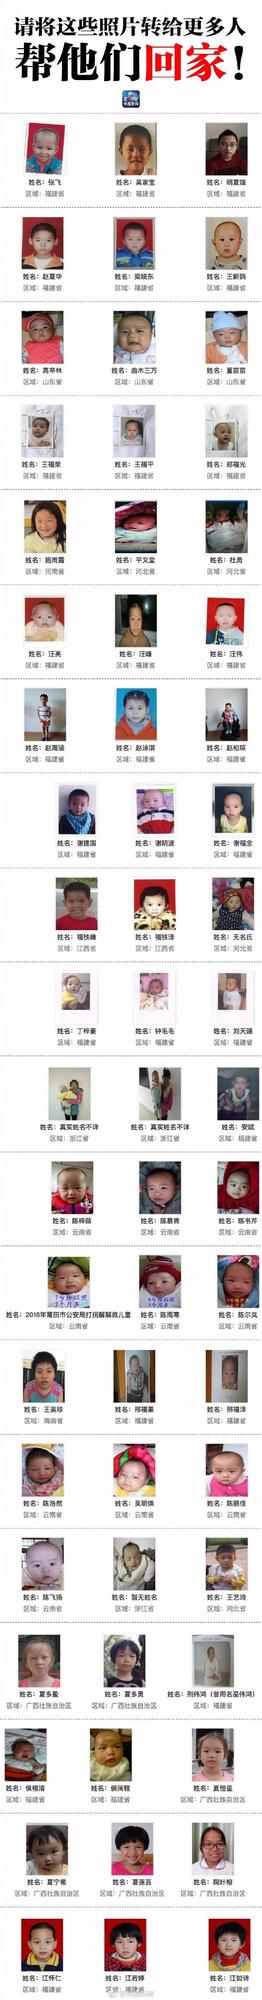 622名被拐儿童解救名单公布 其中多名来自湖北